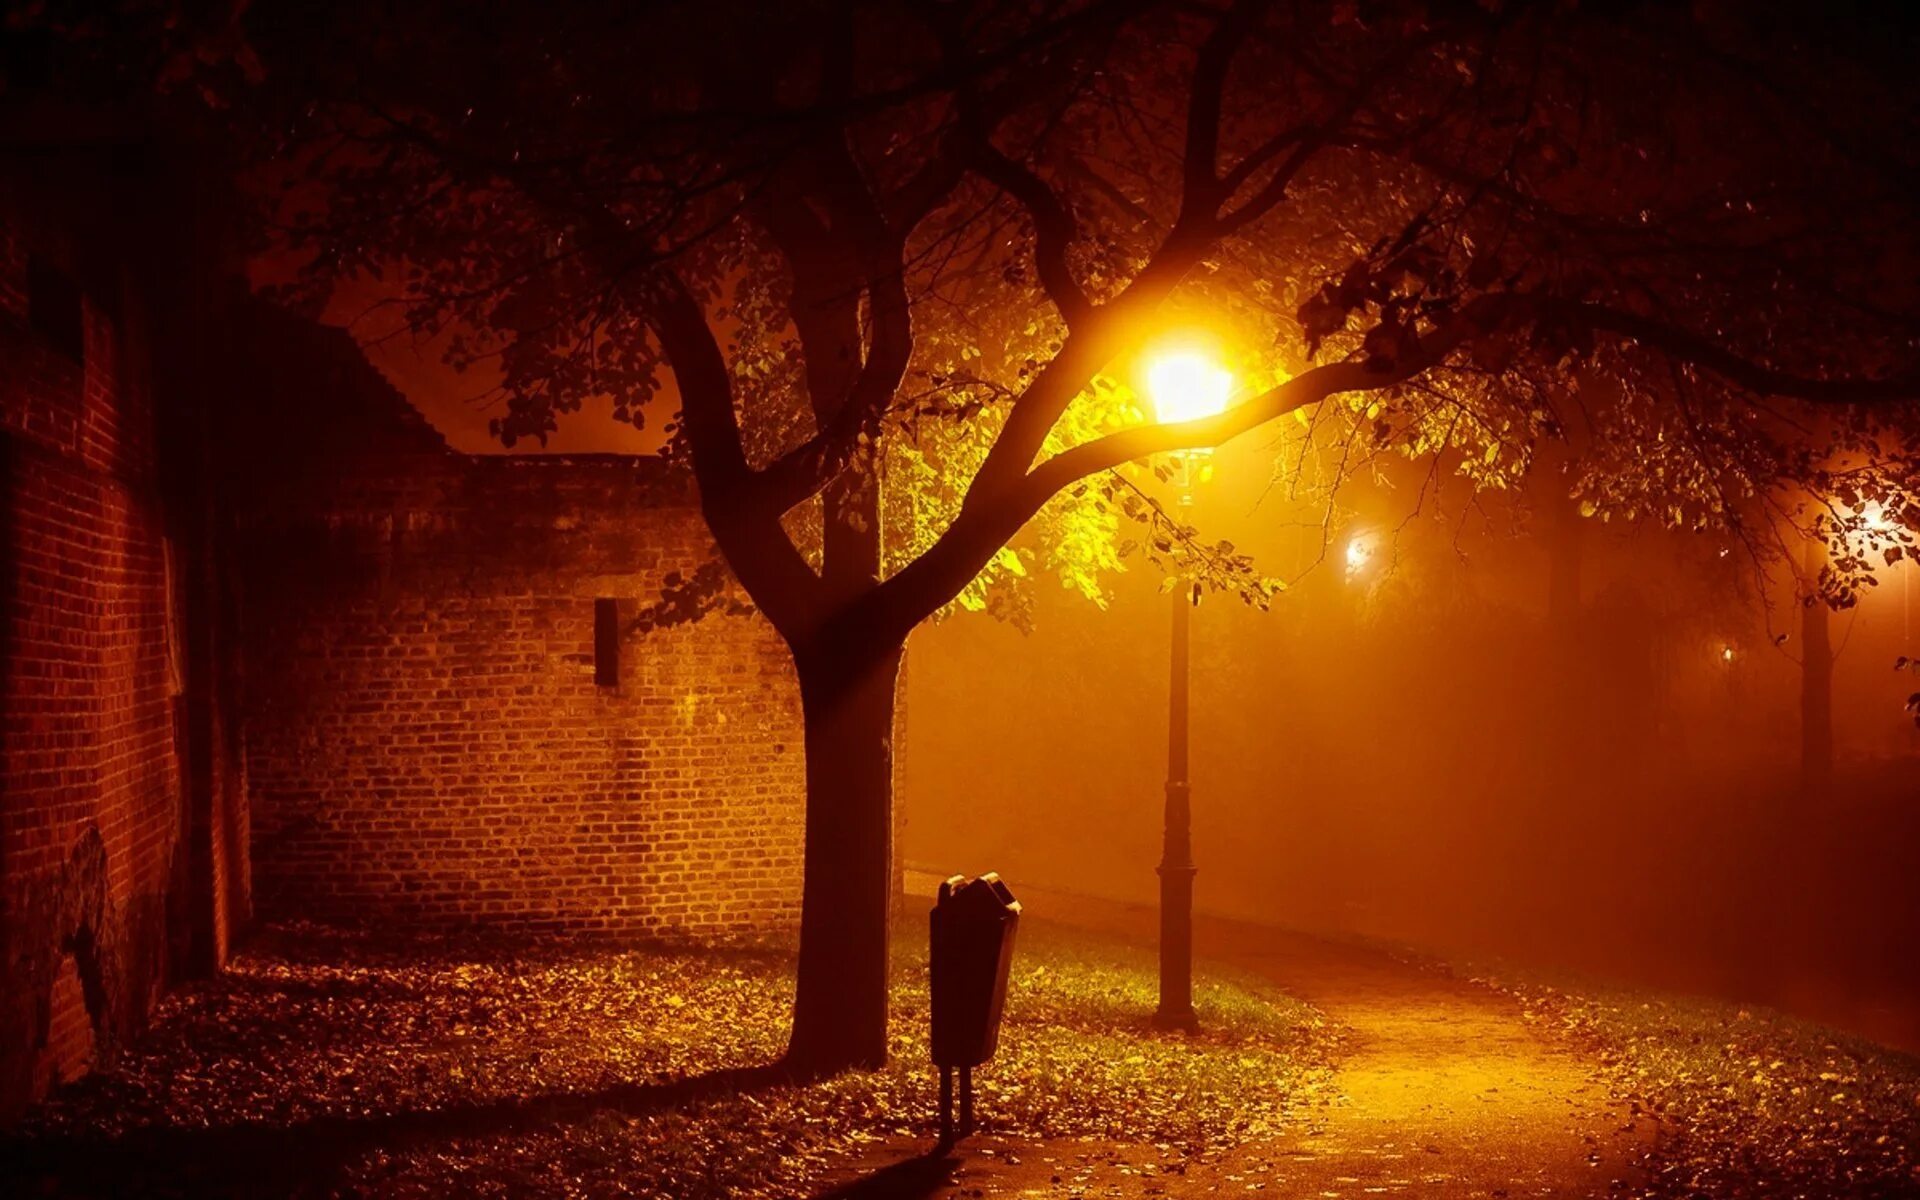 Вечер свет фонаря. Осень ночь. Уличный фонарь ночью. Вечерняя улица с фонарями. Ночная улица с фонарями.